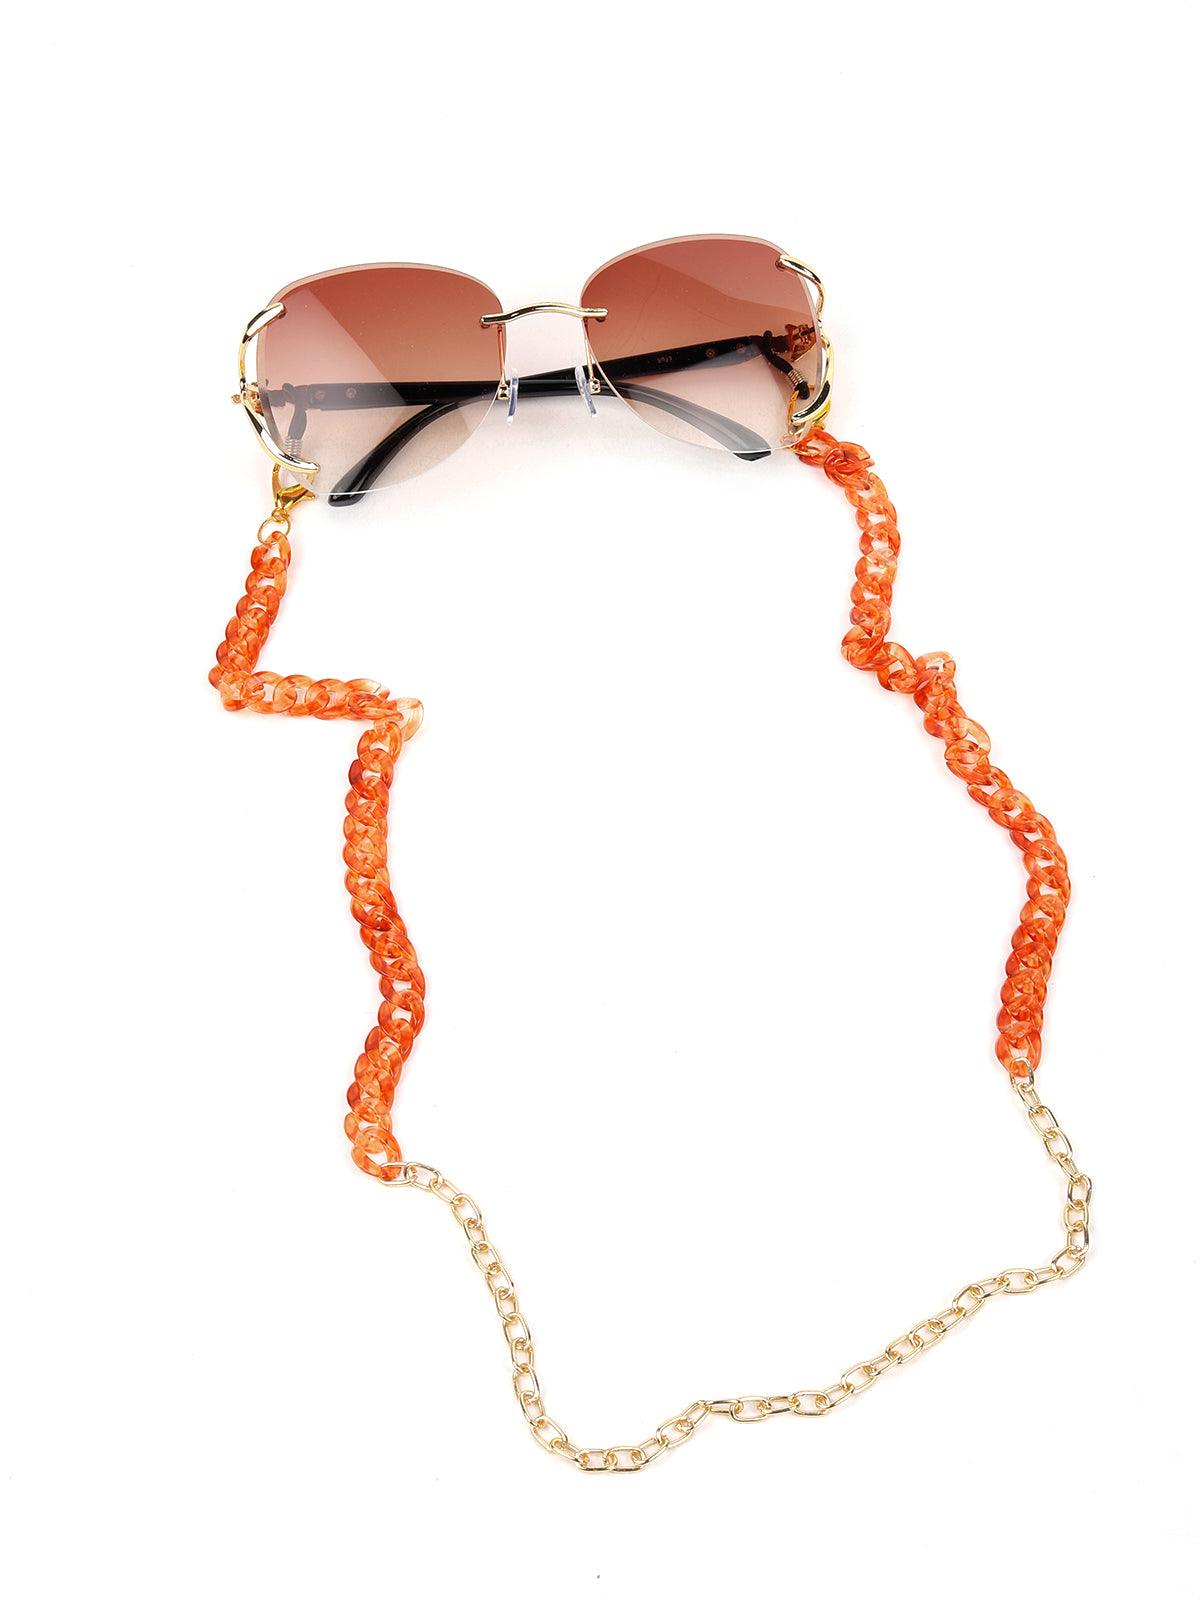 DIY Beaded Daisy Sunglasses Chain — Entertain the Idea